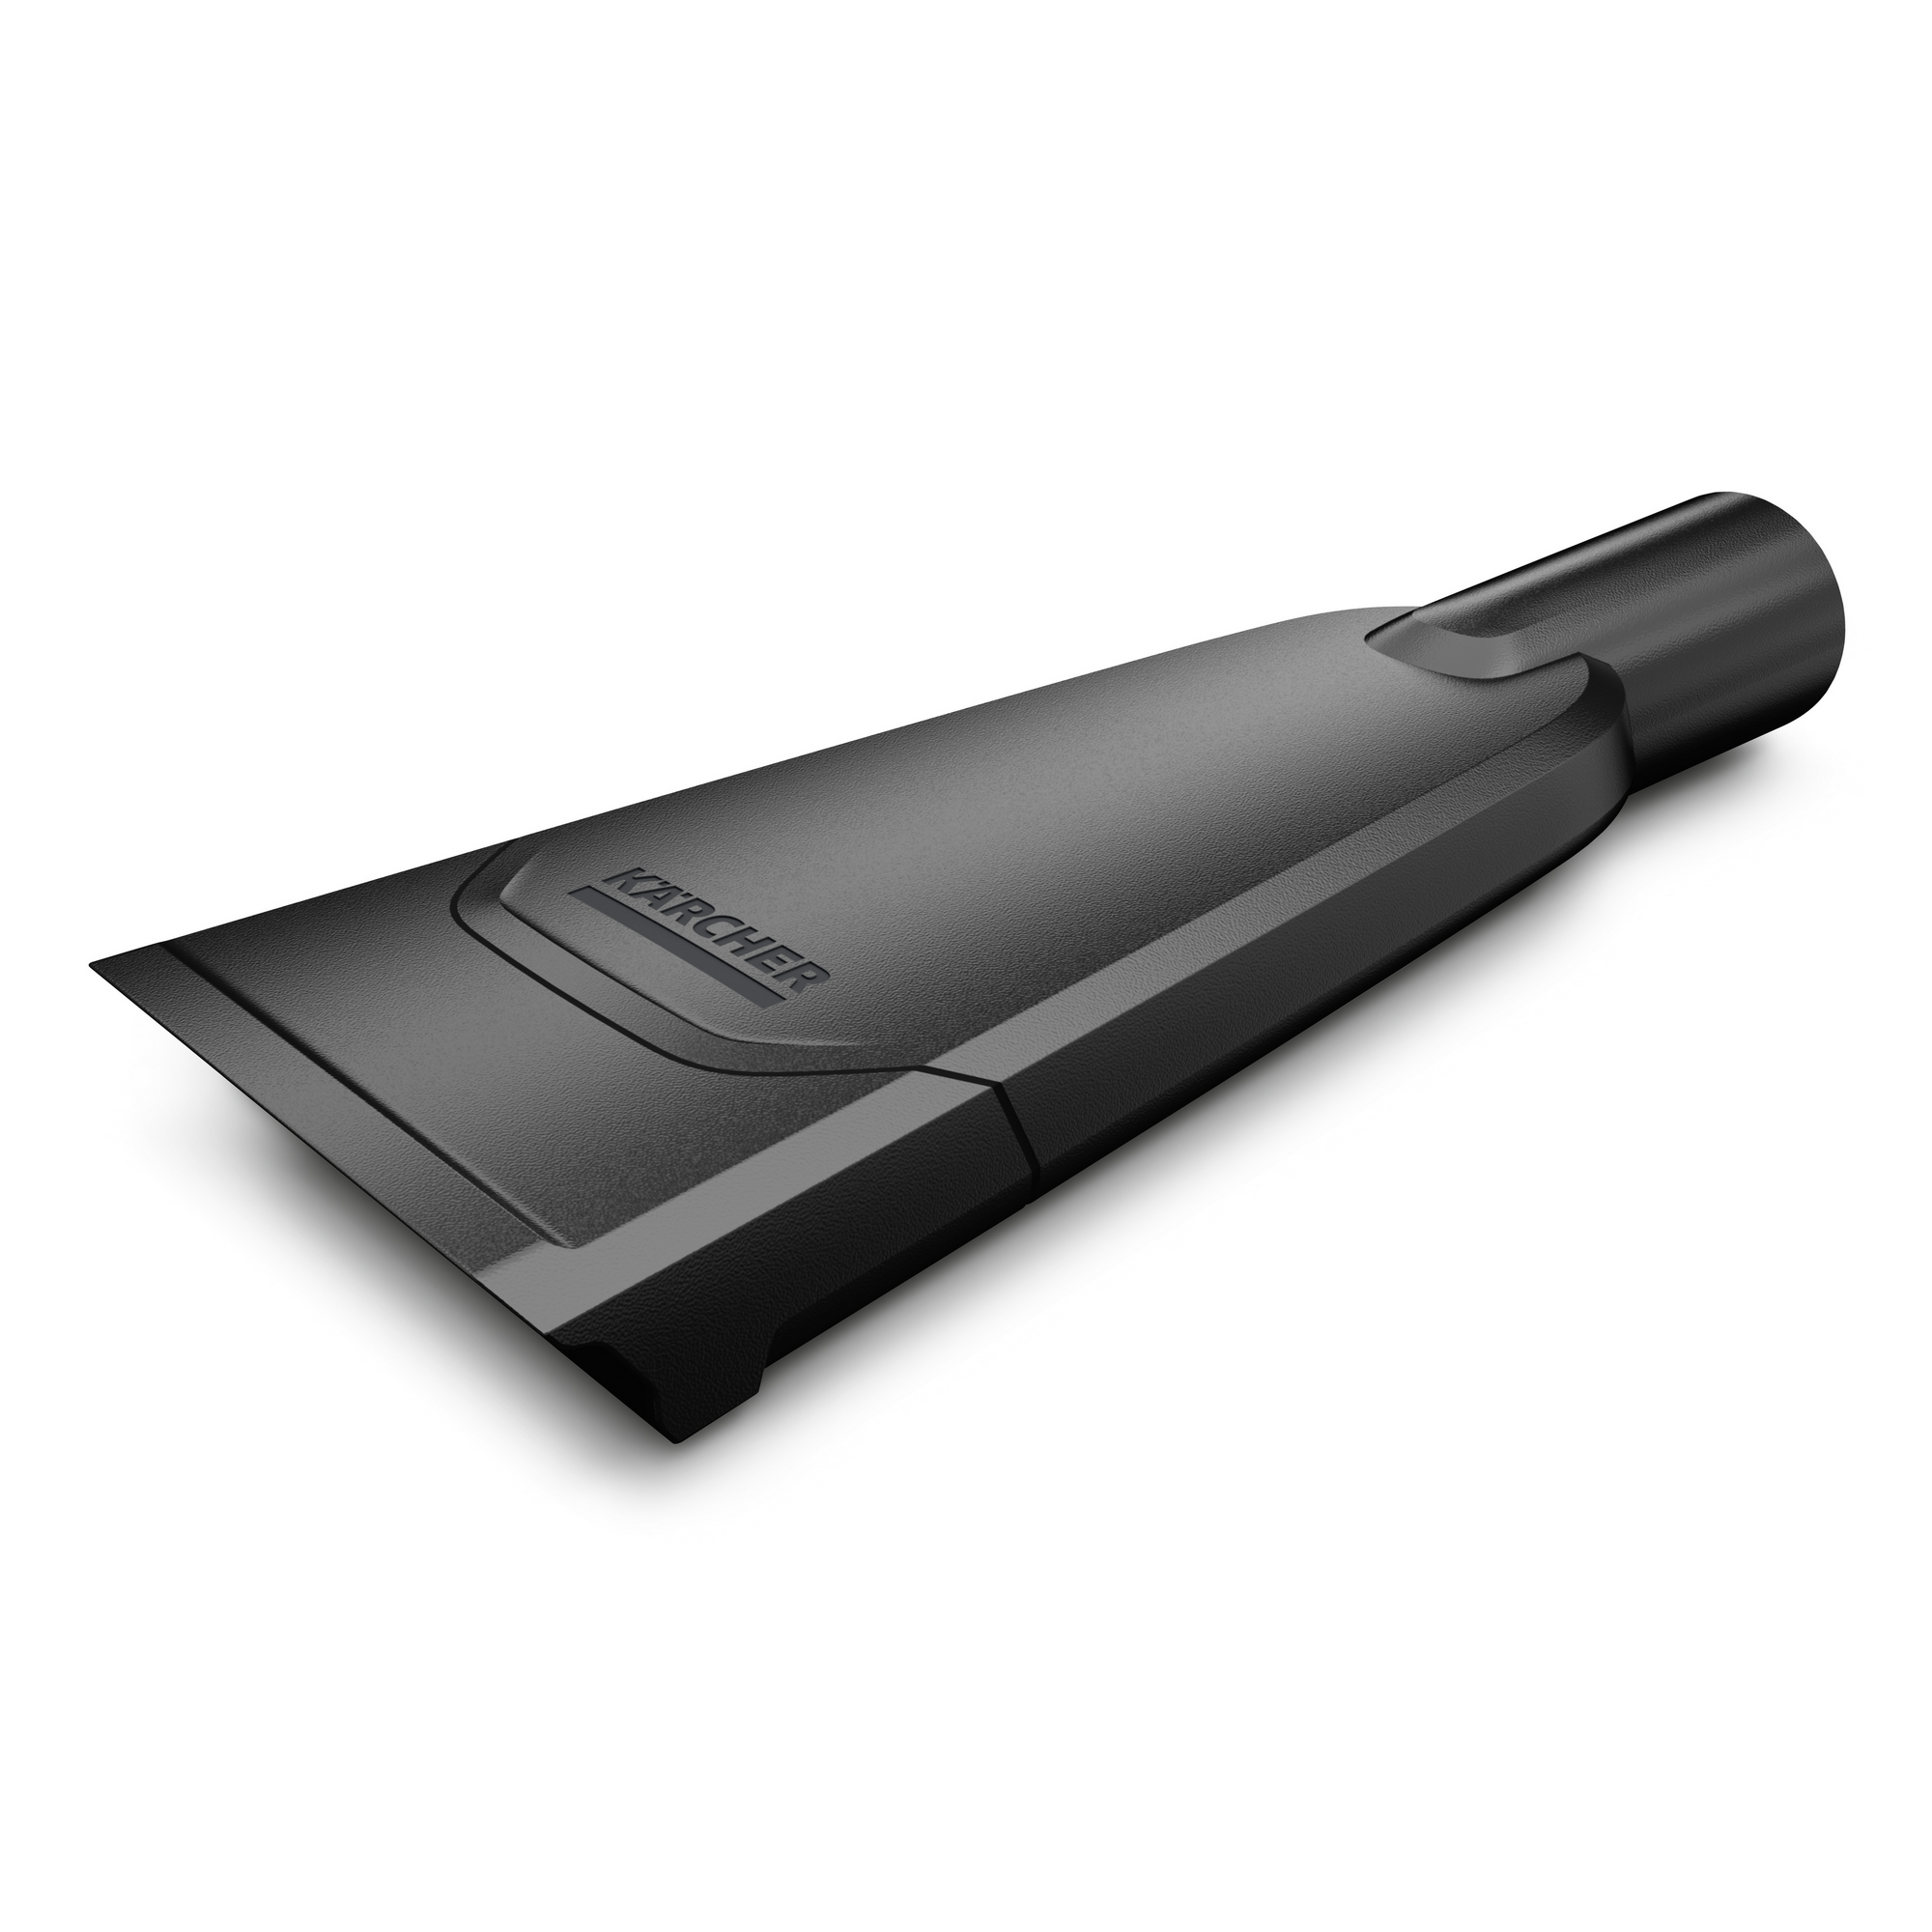 Autosaugdüse für Nass- und Trockensauger schwarz 25,8 x 10,5 x 4 cm + product picture